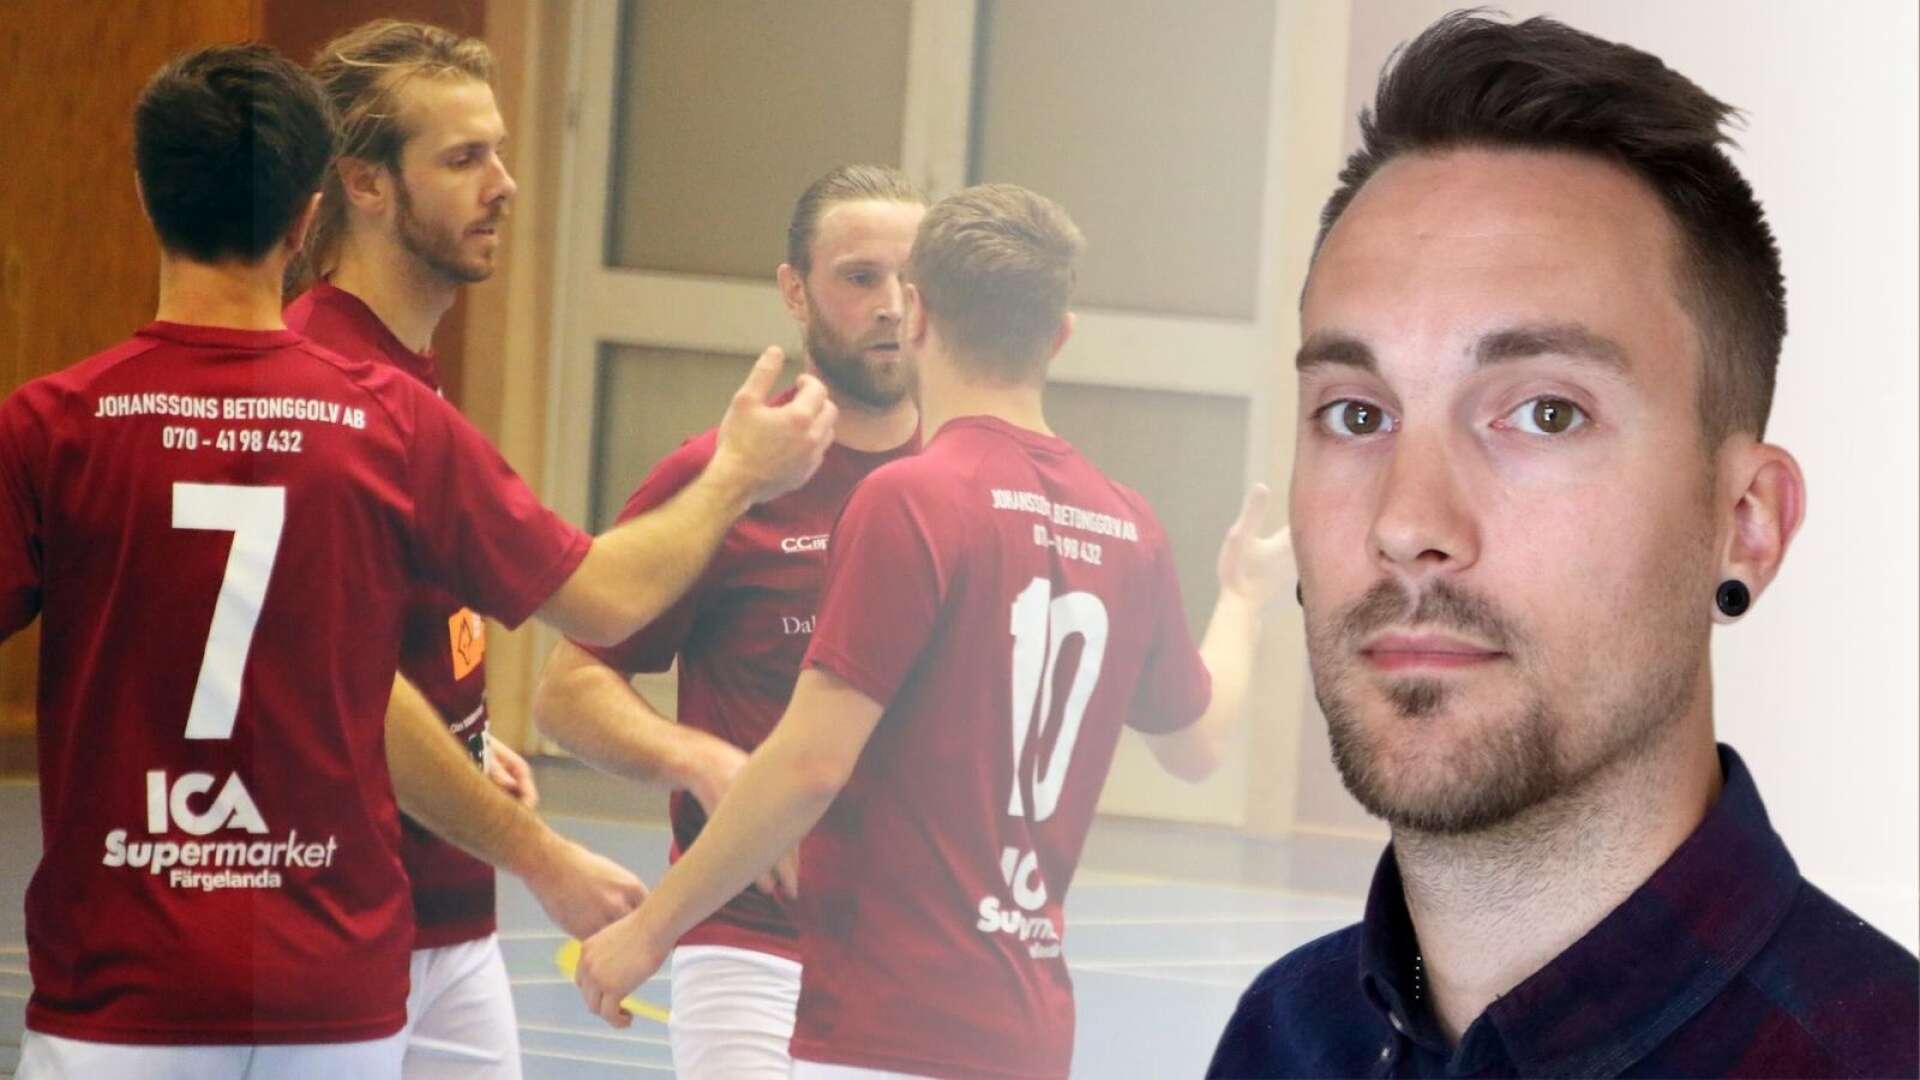 Färgelanda futsals säkrade kontrakt är en bragd värd mer än ett nytt kontrakt, menar Dalslänningens sportredaktör Johan Lindahl.